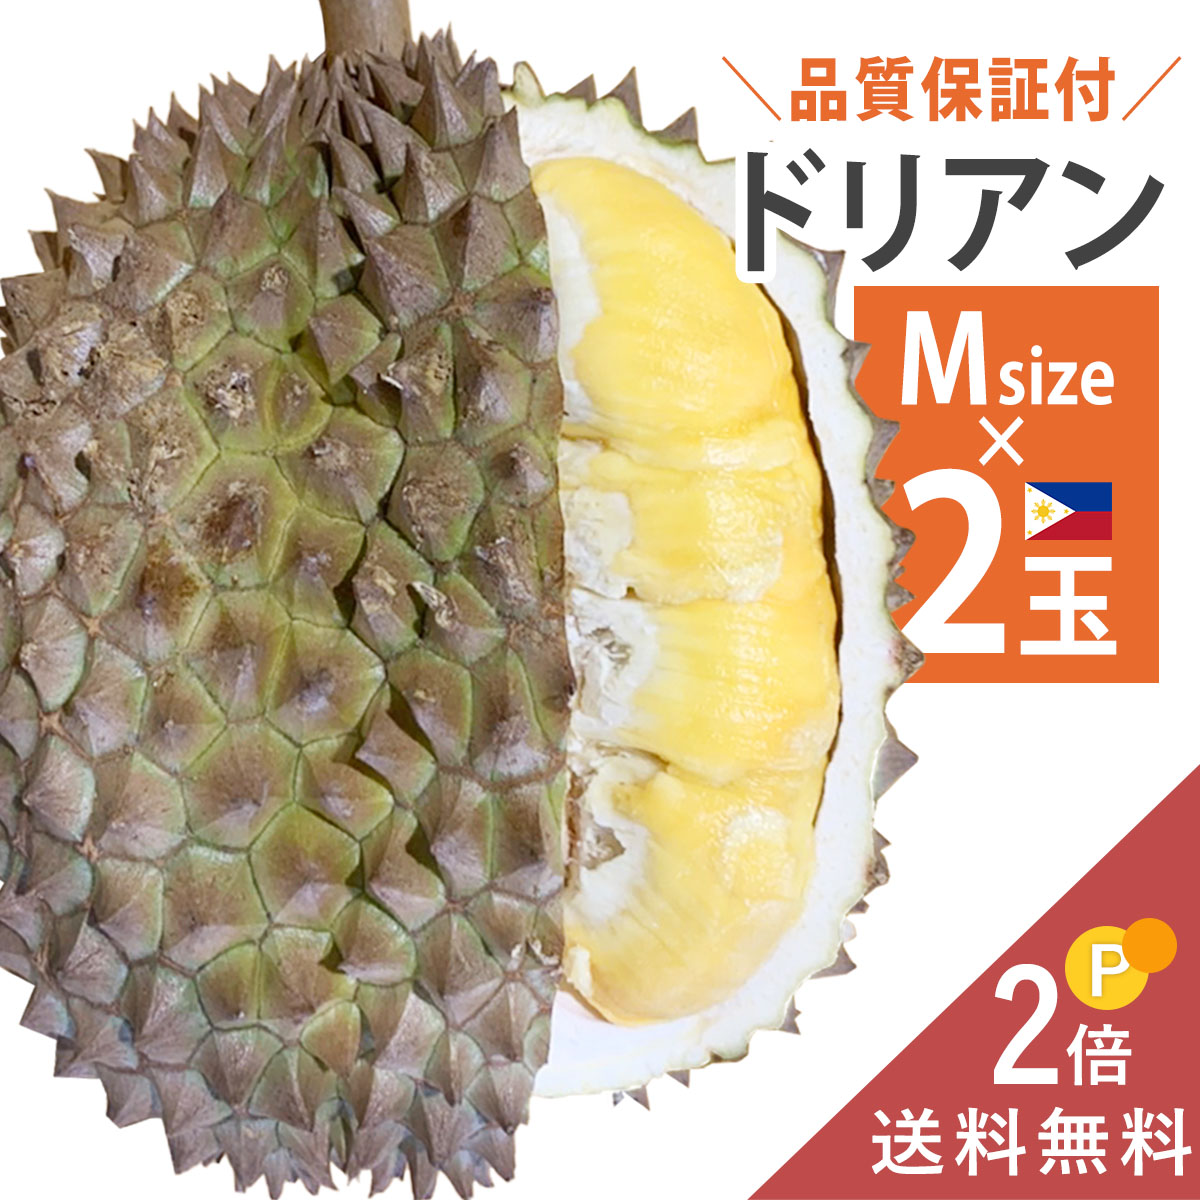 フィリピンで有名な品種の1つ プヤット種をお届け ドリアン好きな方へ大変おすすめです 日曜までの注文→翌木曜出荷予定 準備ができ次第すぐ出荷 フィリピン産 ドリアン Mサイズ 2玉 至高 送料無料 生 生ドリアン 大きな割引 プヤット種 durian 生鮮 約1.1～kg 1玉あたり